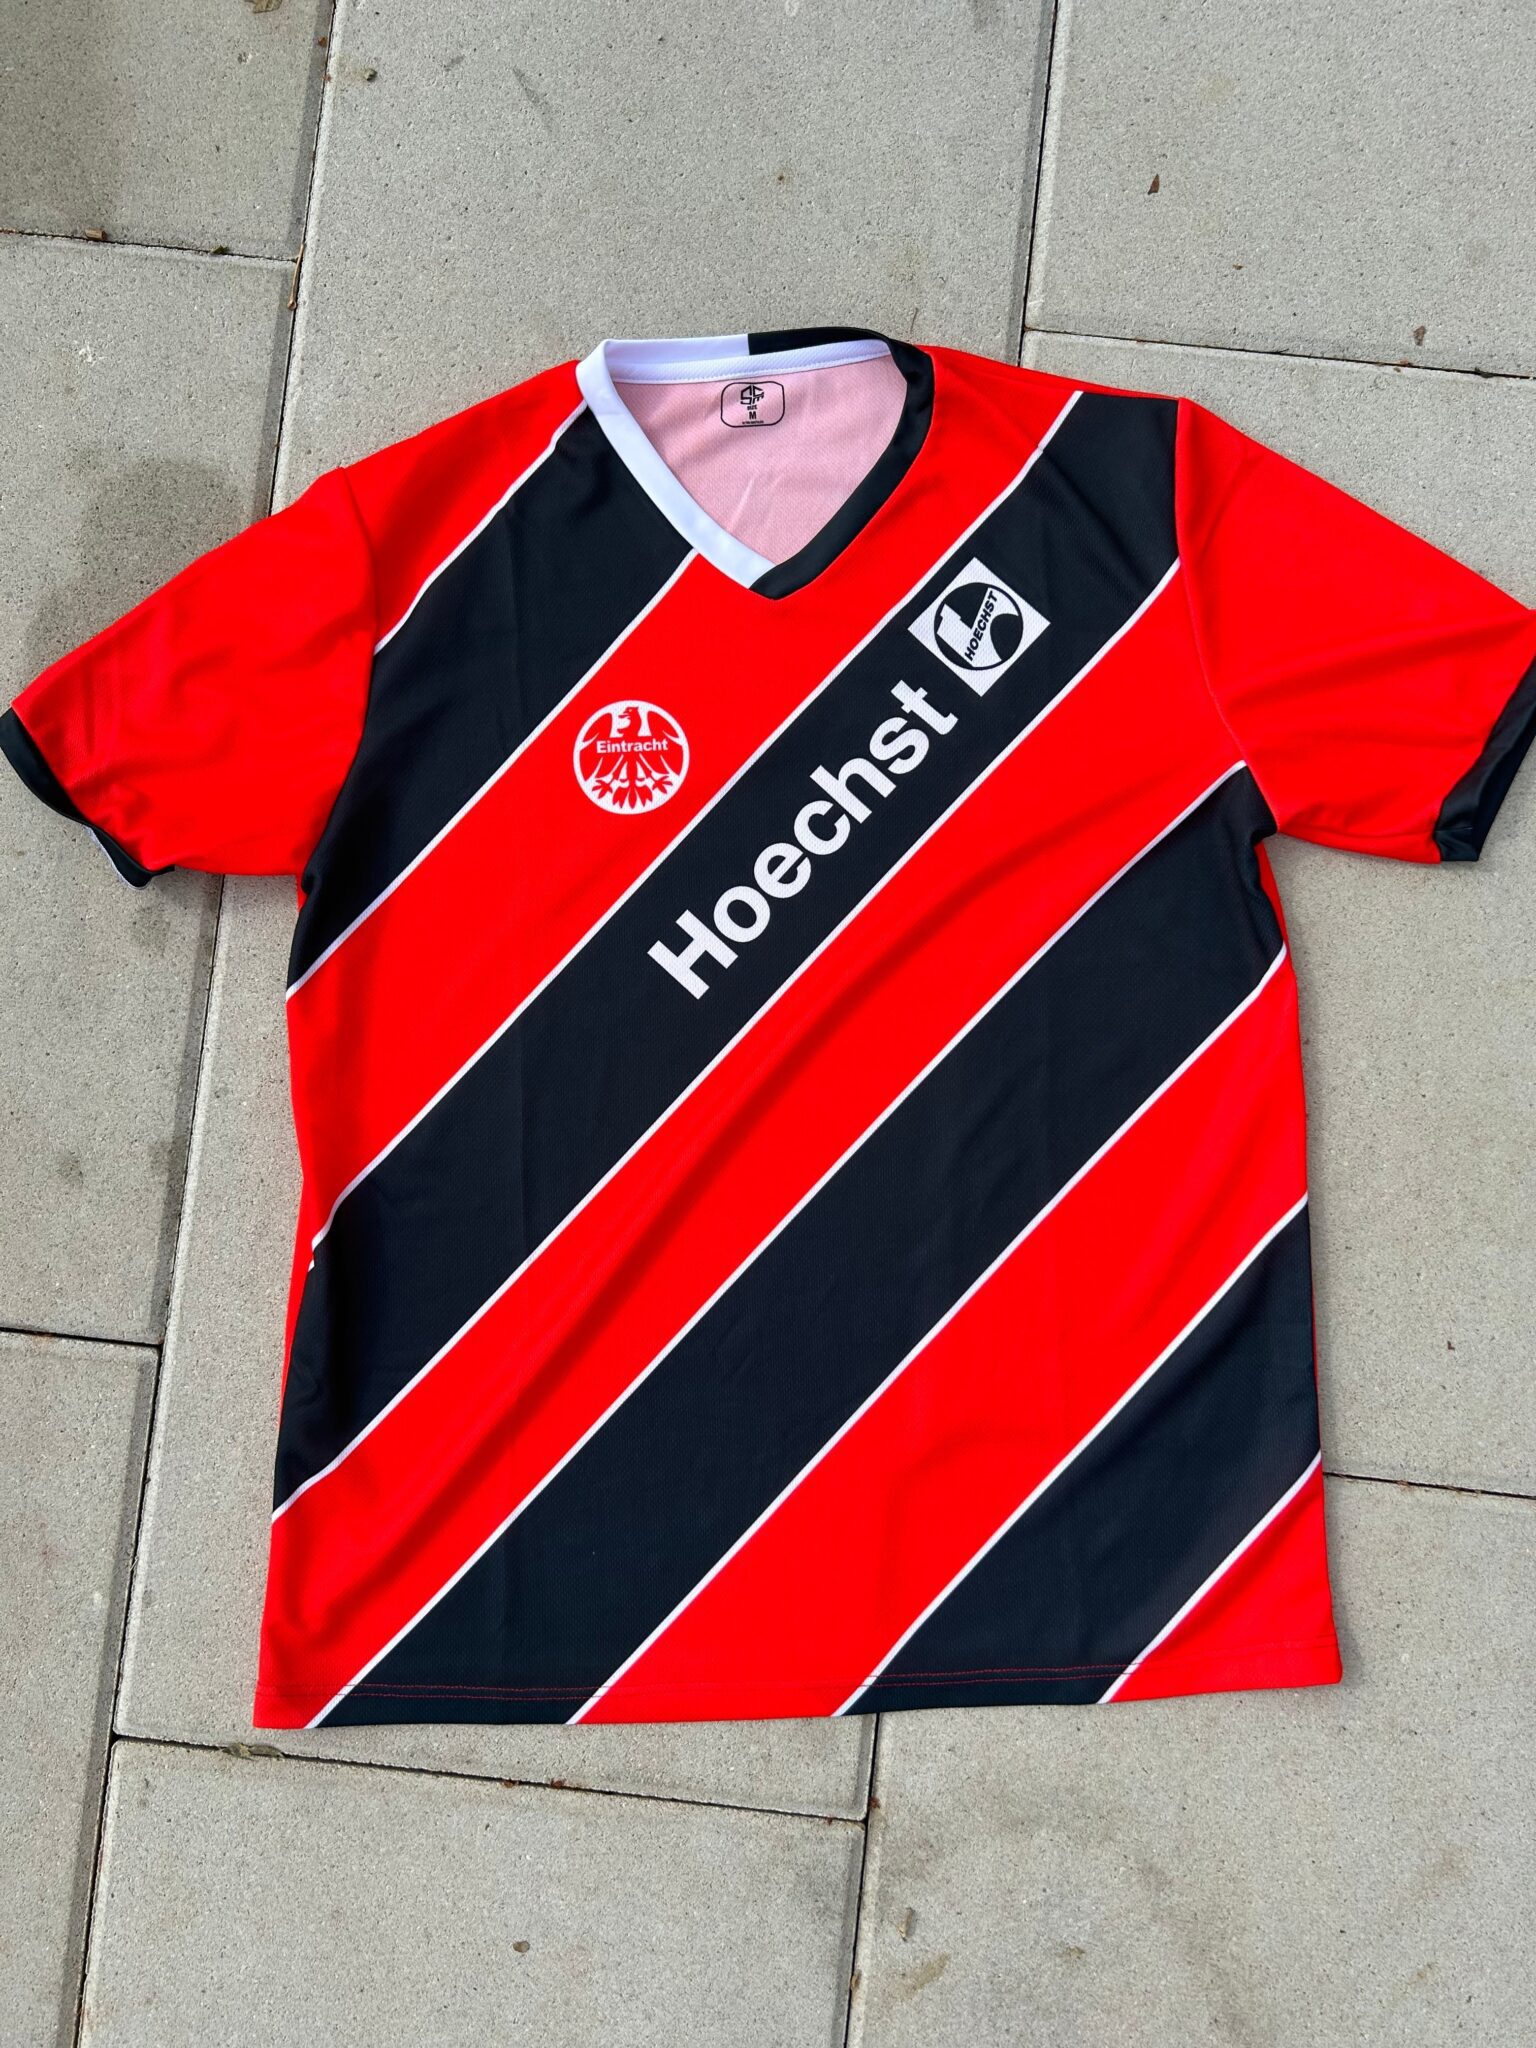 Eintracht Frankfurt Home Fußballtrikot 1987/1988 Retro #7 Falkenmayer Football Jersey Shirt - Sport Club Memories